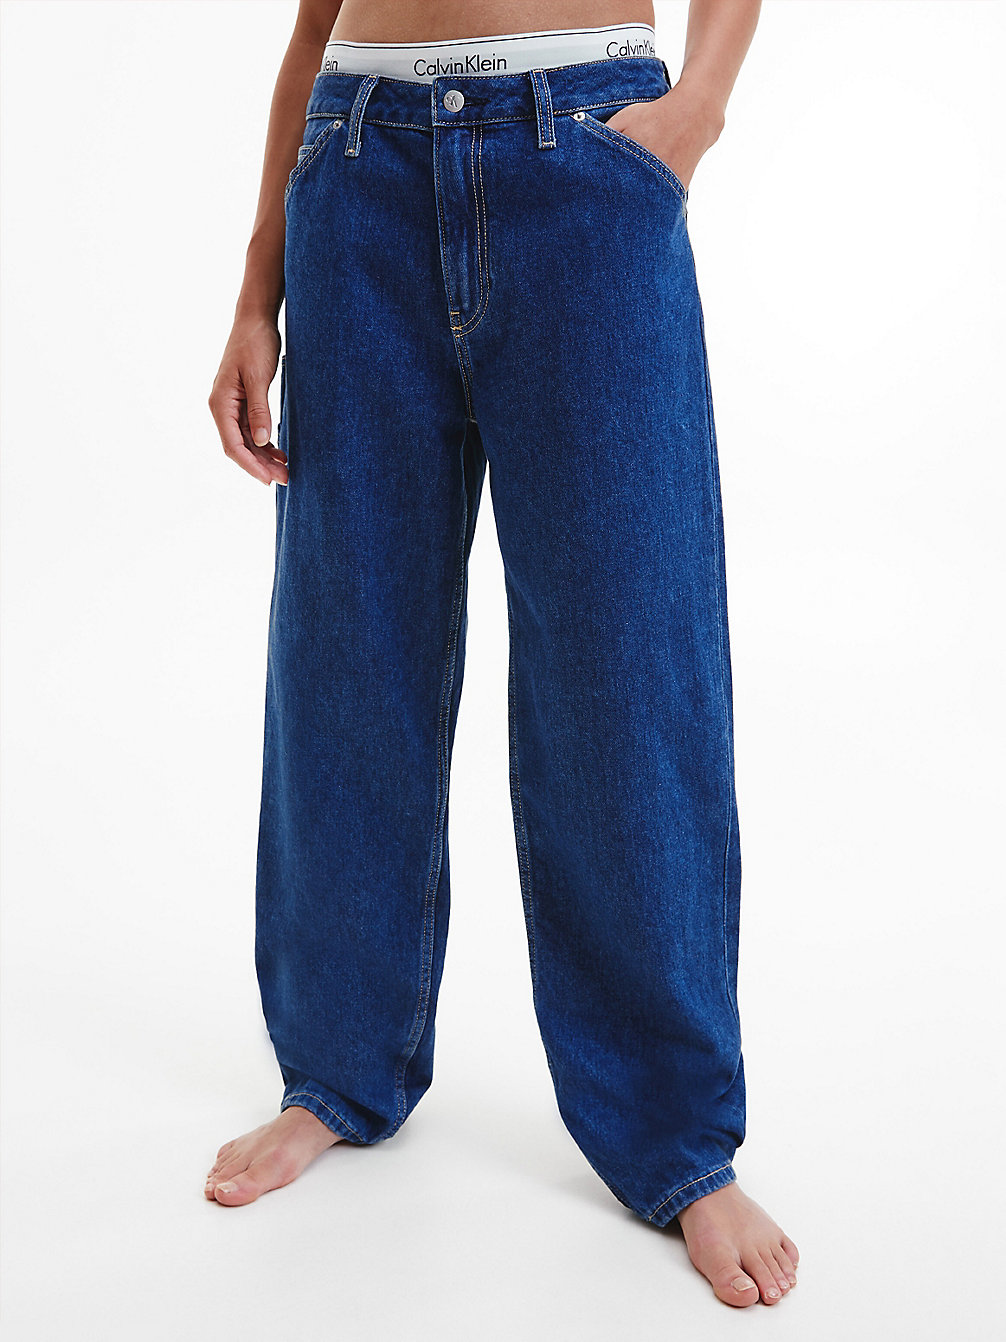 DENIM MEDIUM 90's Straight Utility Jeans undefined women Calvin Klein